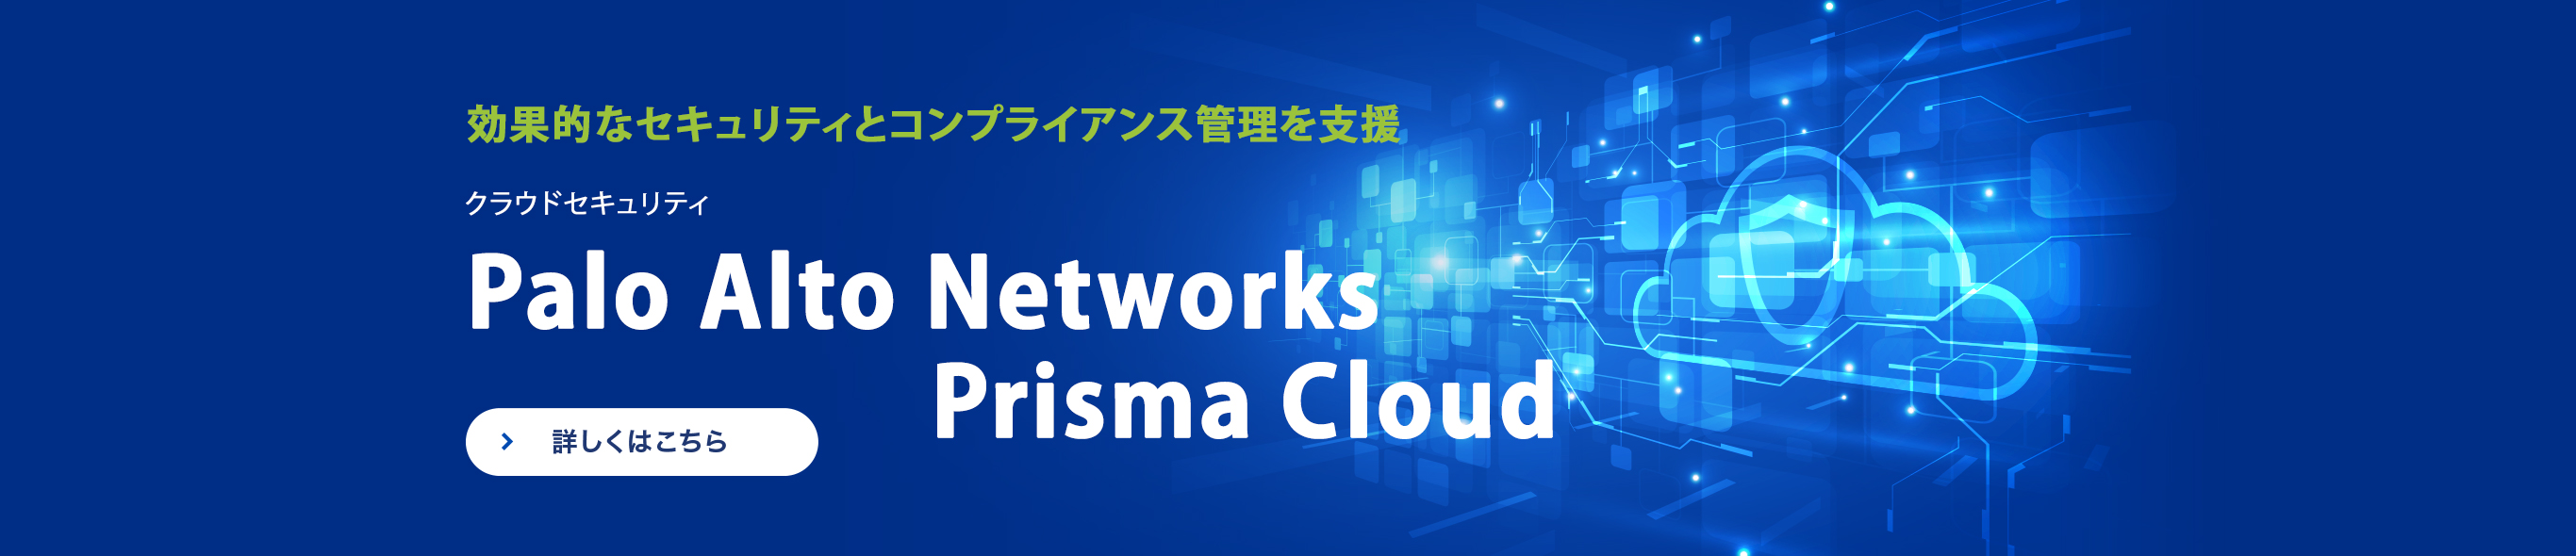 パブリッククラウド向けの効果的なセキュリティとコンプライアンス管理を支援 Palo Alto Networks  Prisma Cloud